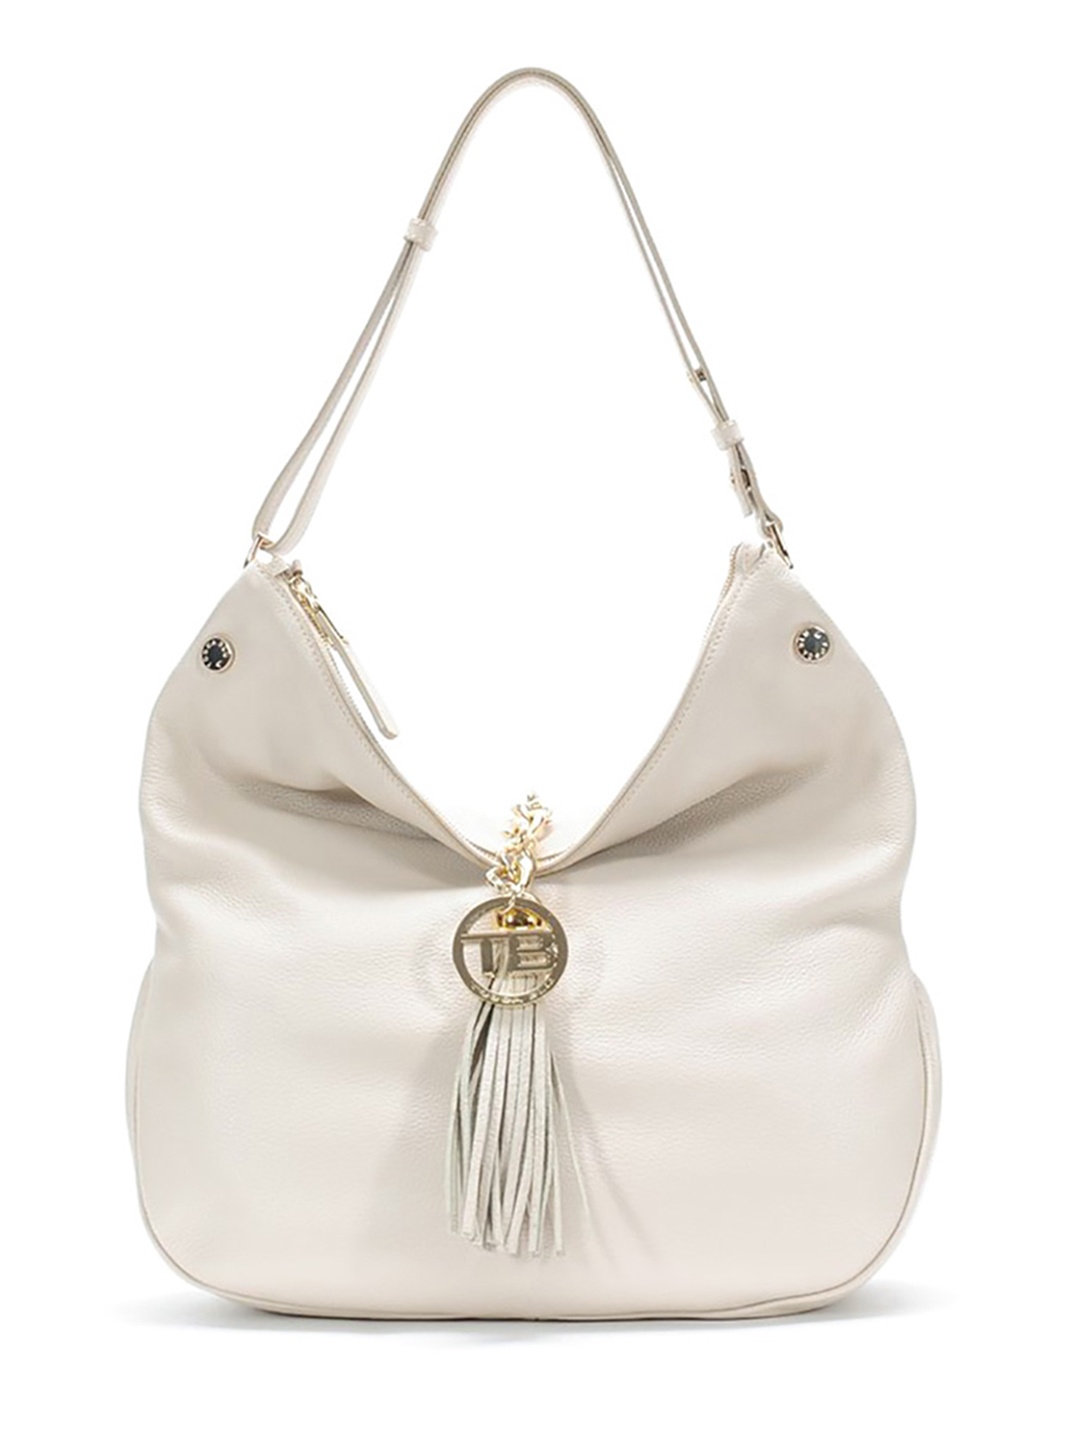 Фото Женская сумка-клатч из мягкой кожи с декоративной кистью на золотистой цепочке Классические сумки